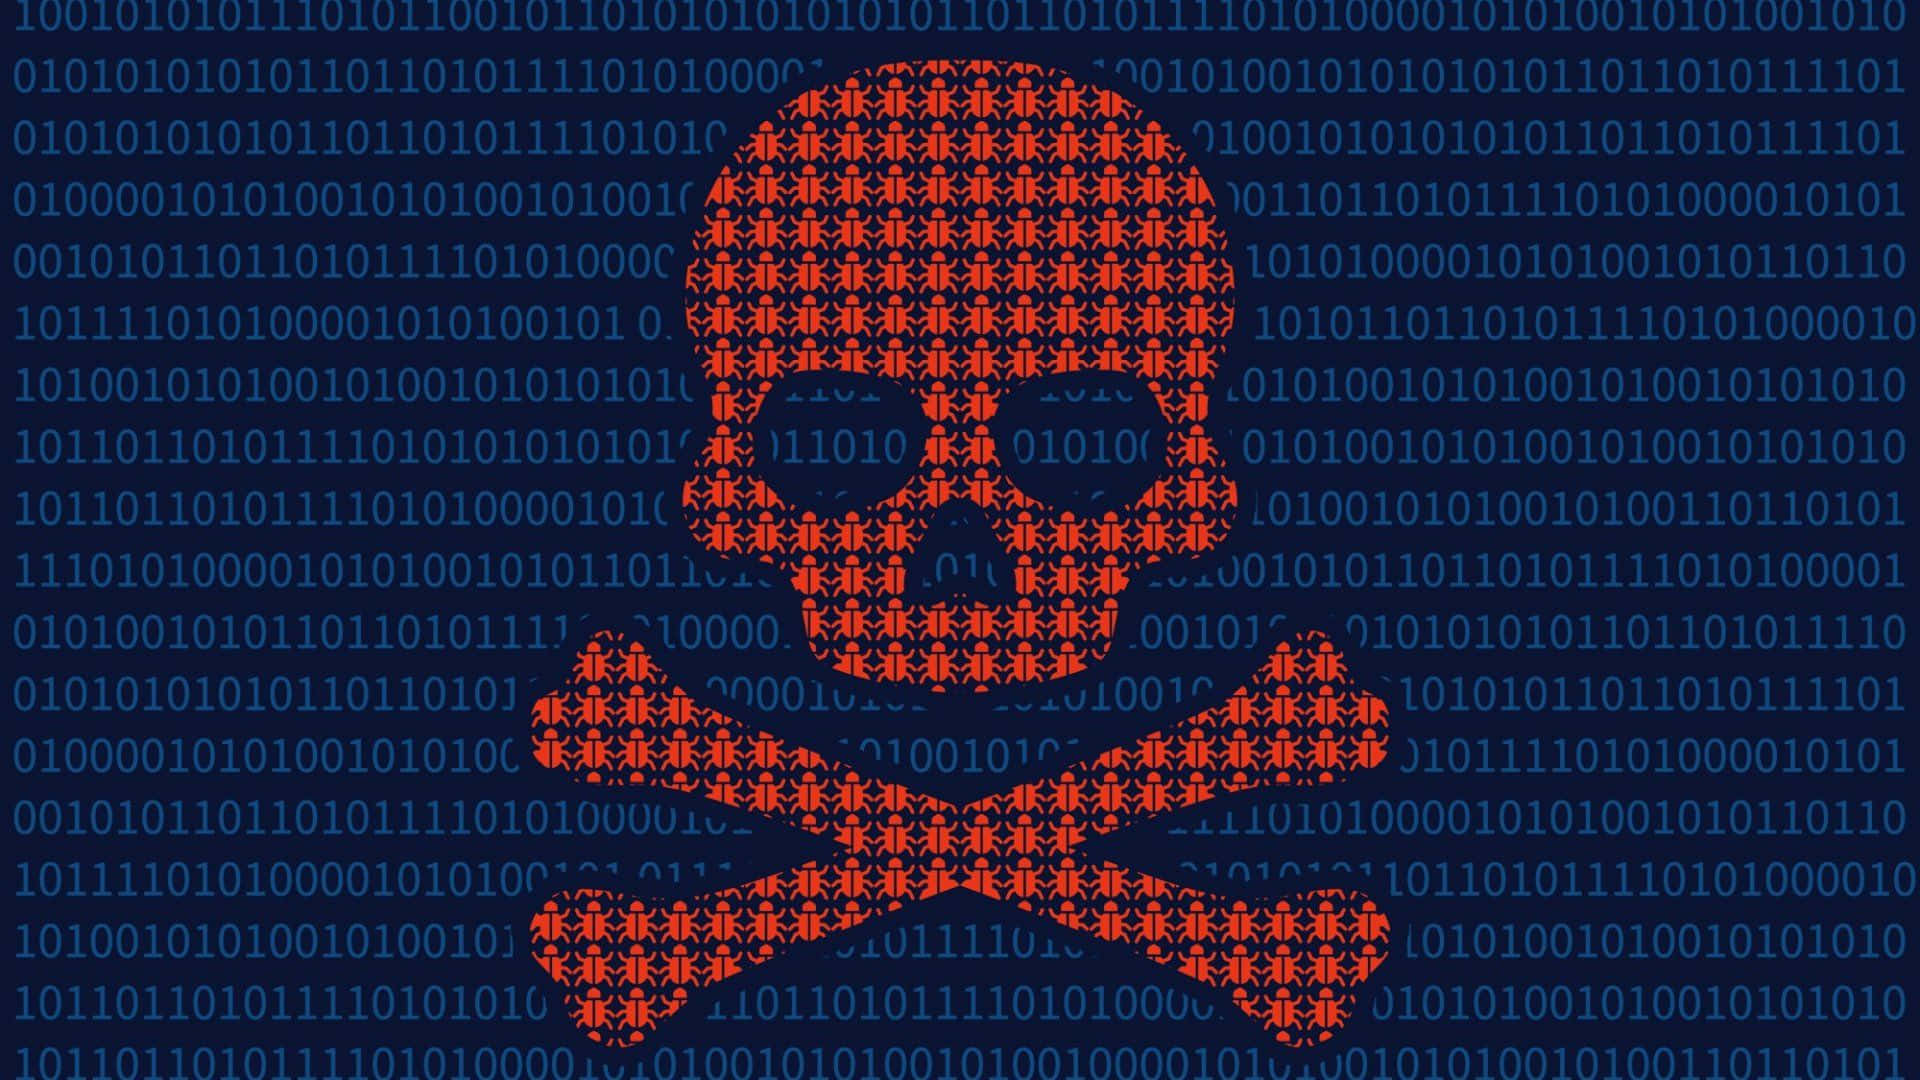 Dark Web Horror: An Illustration Of Malware Wallpaper